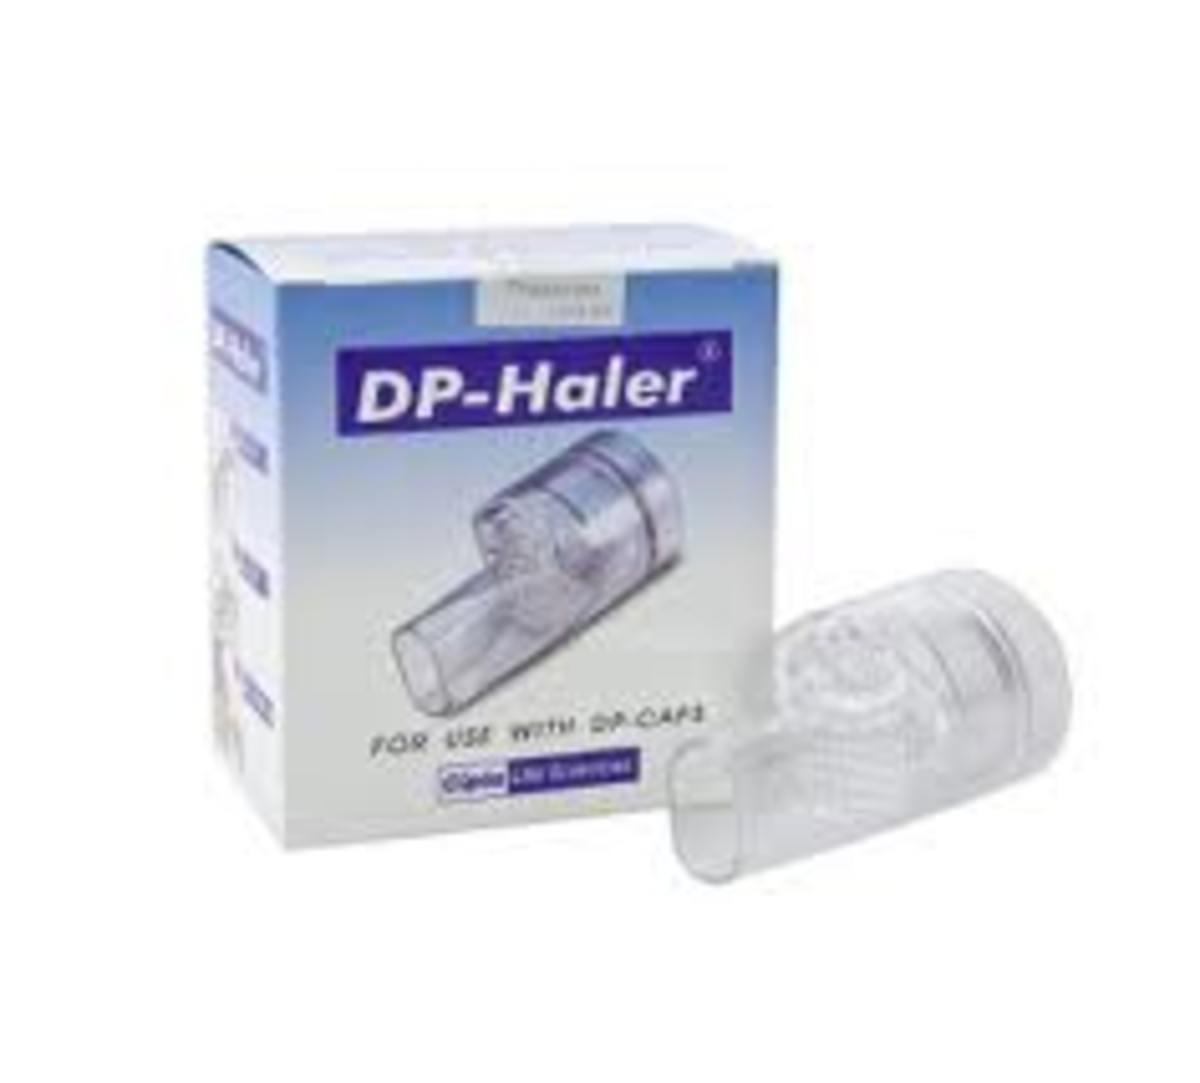 DP Haler a common cheap machine for Asthalin caps